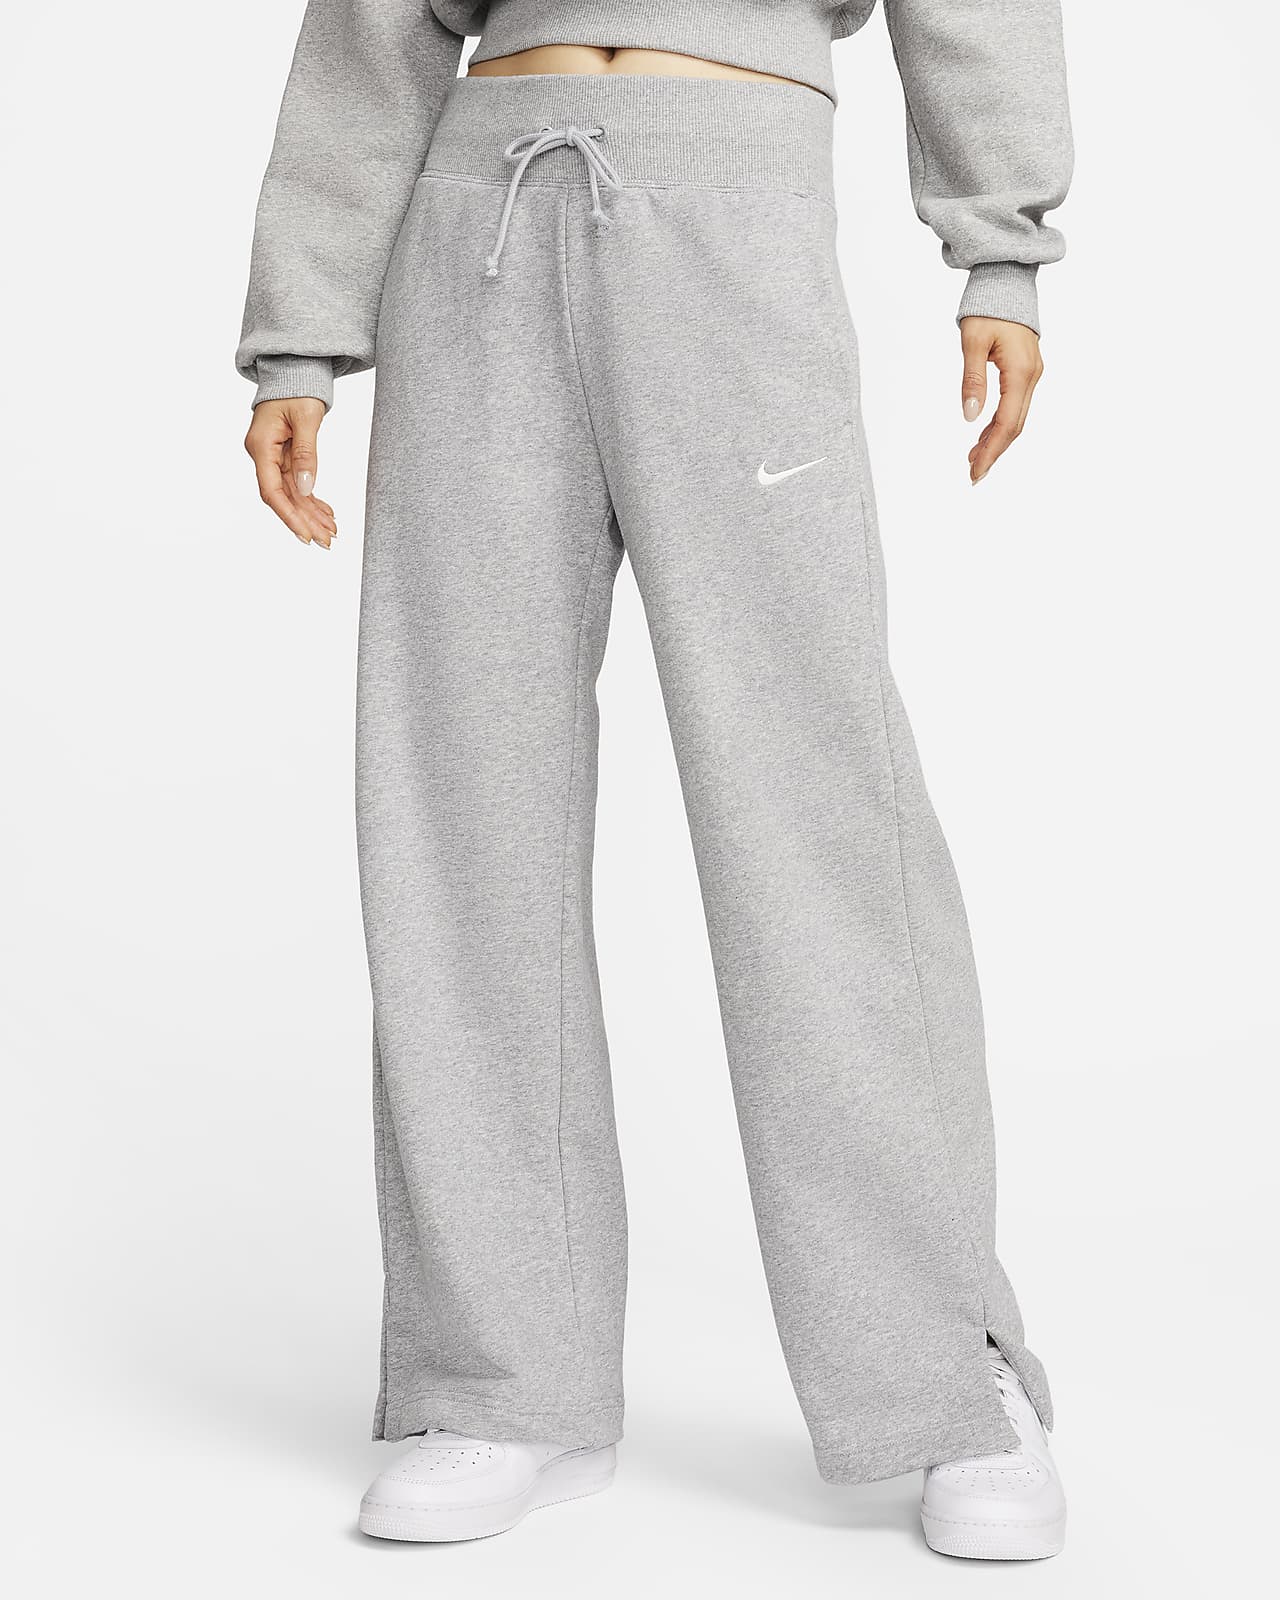 กางเกงซ้อมกีฬาผ้าเฟรนช์เทรีทรงขากว้างเอวสูงผู้หญิง Nike Sportswear Phoenix Fleece